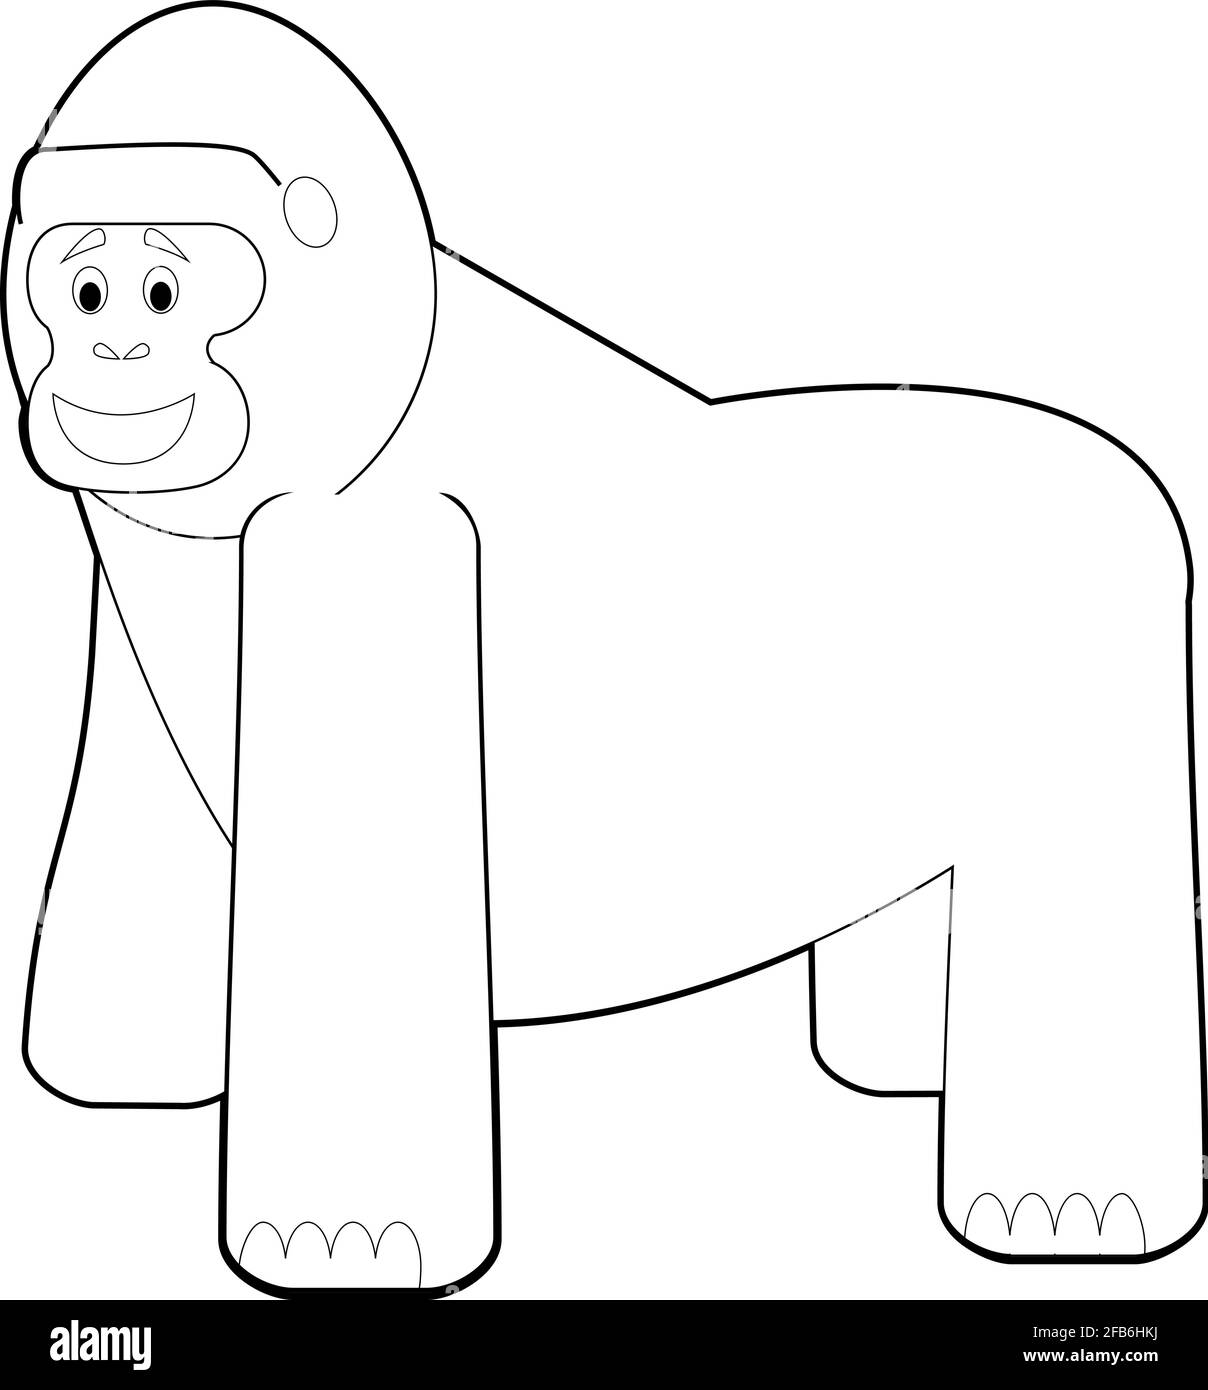 Disegni facili da colorare di animali per bambini piccoli: Gorilla Immagine  e Vettoriale - Alamy